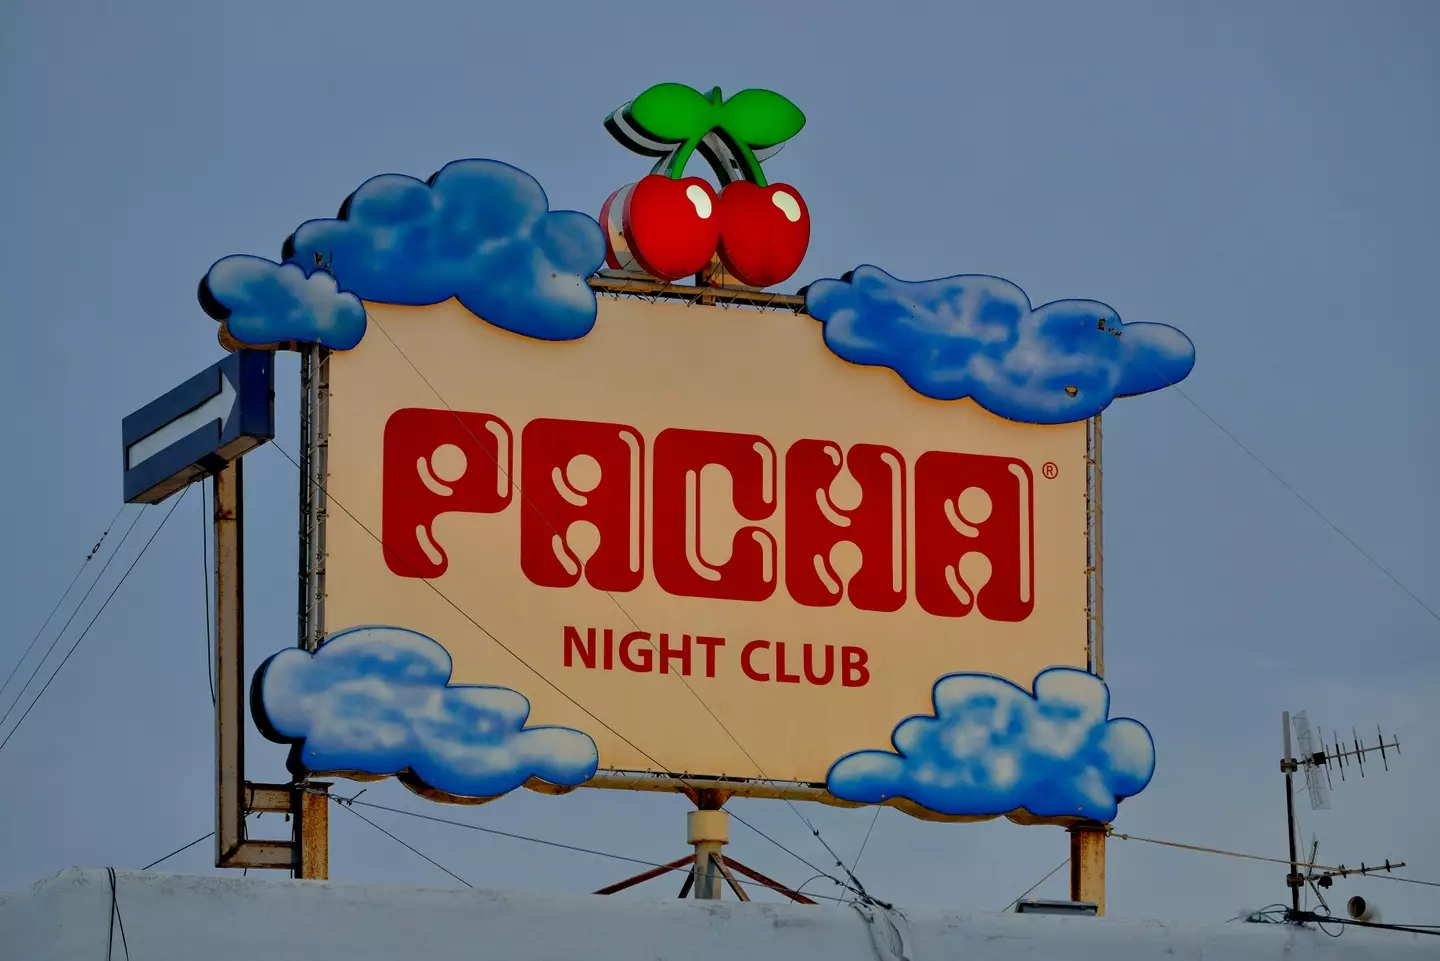 Pacha swung open its doors in 1973.